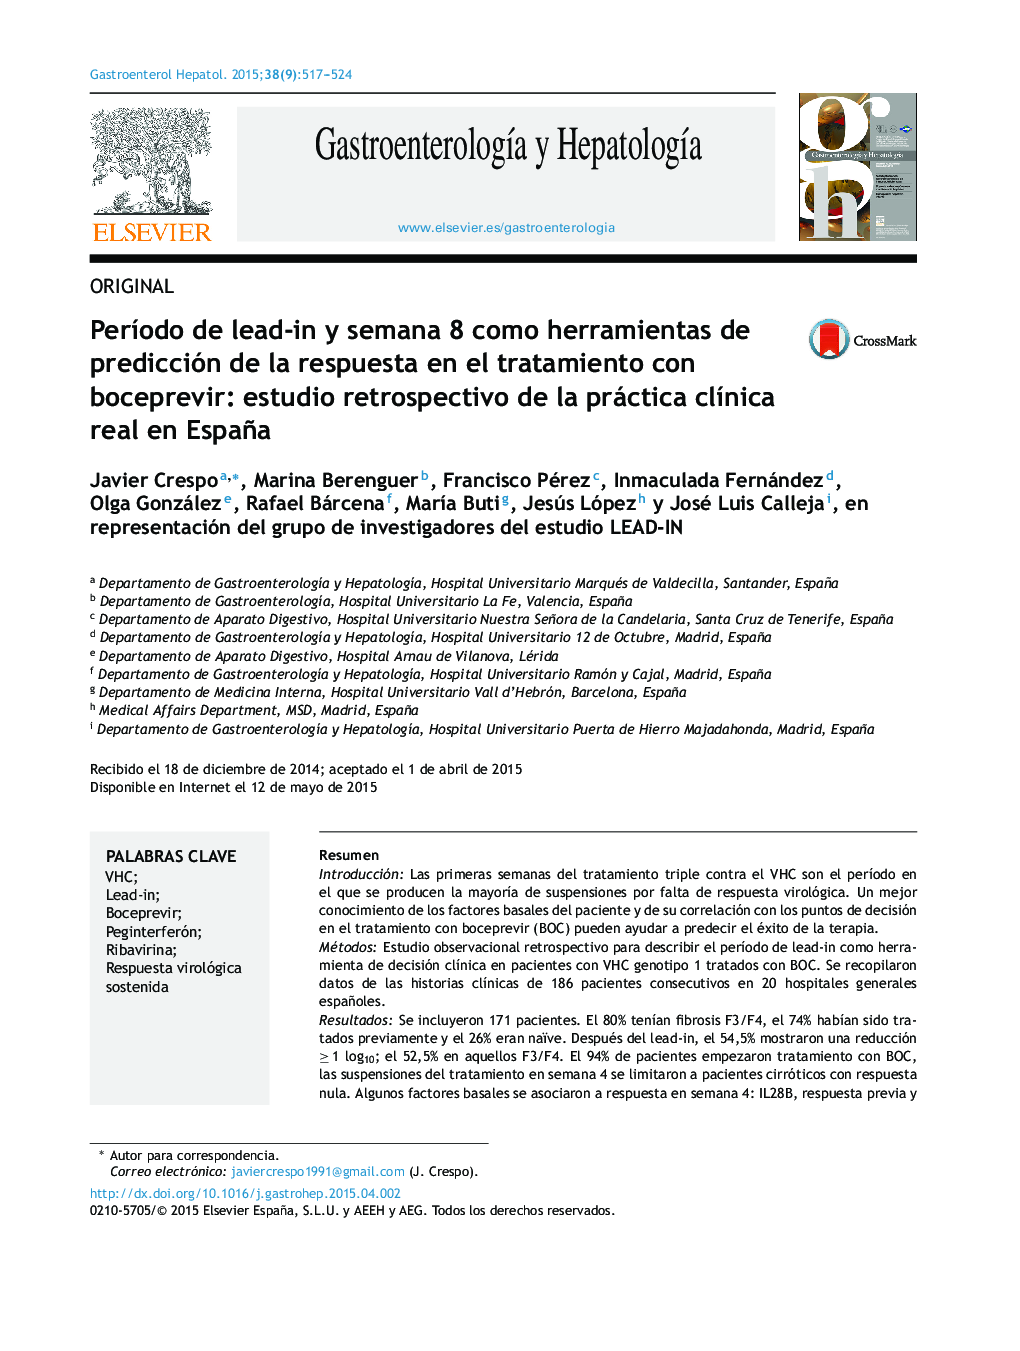 Período de lead-in y semana 8 como herramientas de predicción de la respuesta en el tratamiento con boceprevir: estudio retrospectivo de la práctica clínica real en España